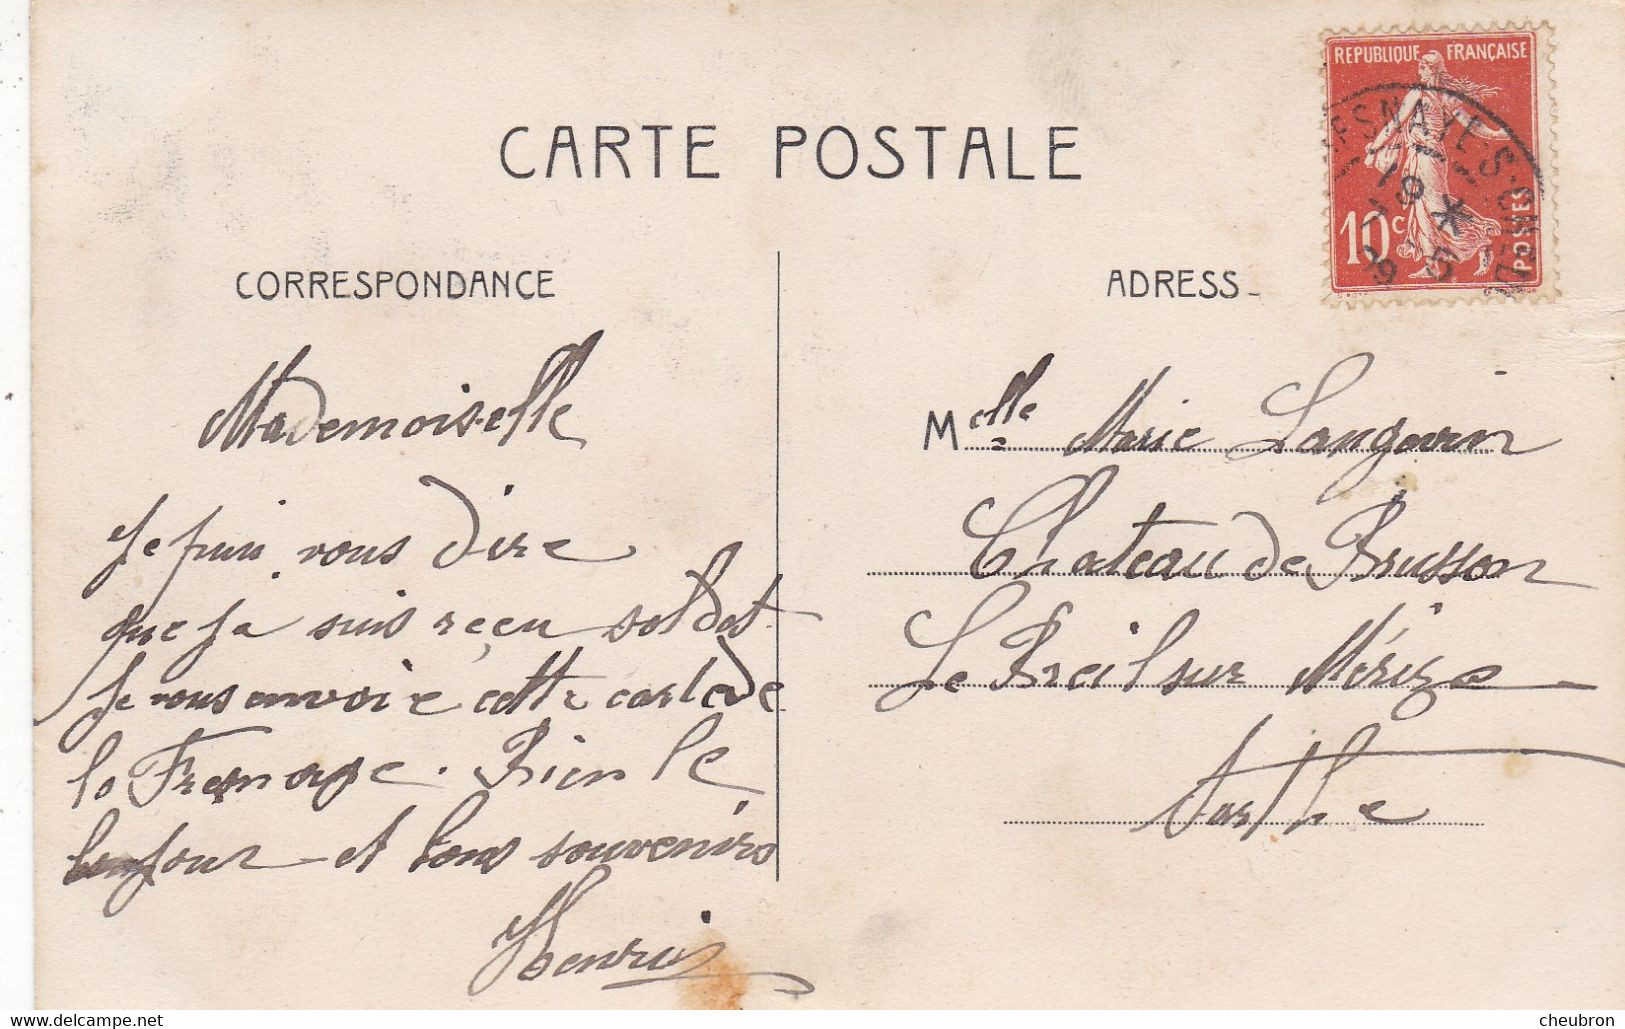 72. LA FRESNAYE SUR CHEDOUET. RARETE. CARTE FANTAISIE. " UNE PENSEE DE LA FRESNAYE ". BRILLANTS. PAILLETTES. ANNEE 1909 - La Fresnaye Sur Chédouet